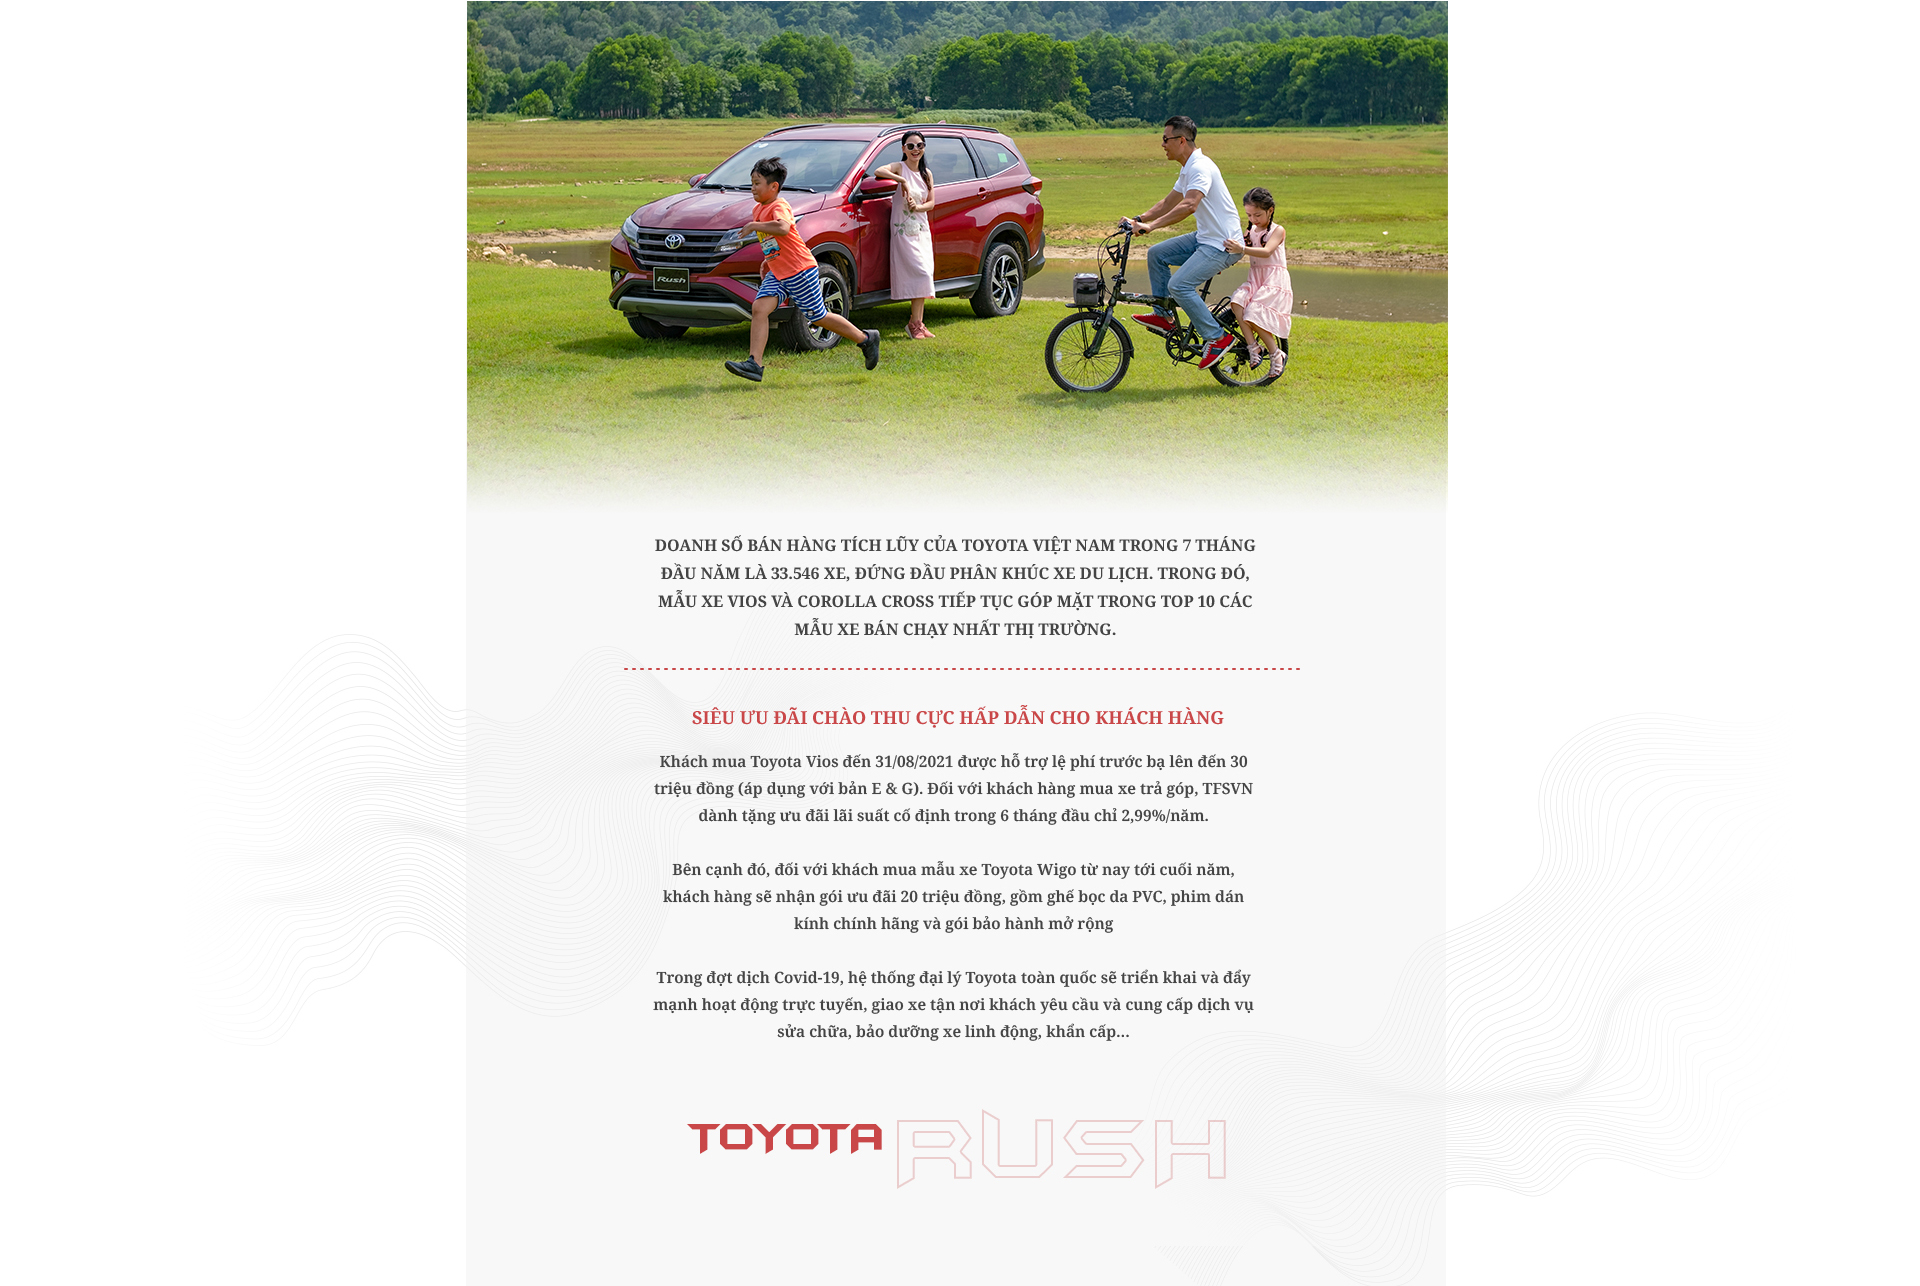 Toyota Rush mở ‘sân chơi’ riêng tại Việt Nam nhờ khả năng vận hành tối ưu - 32